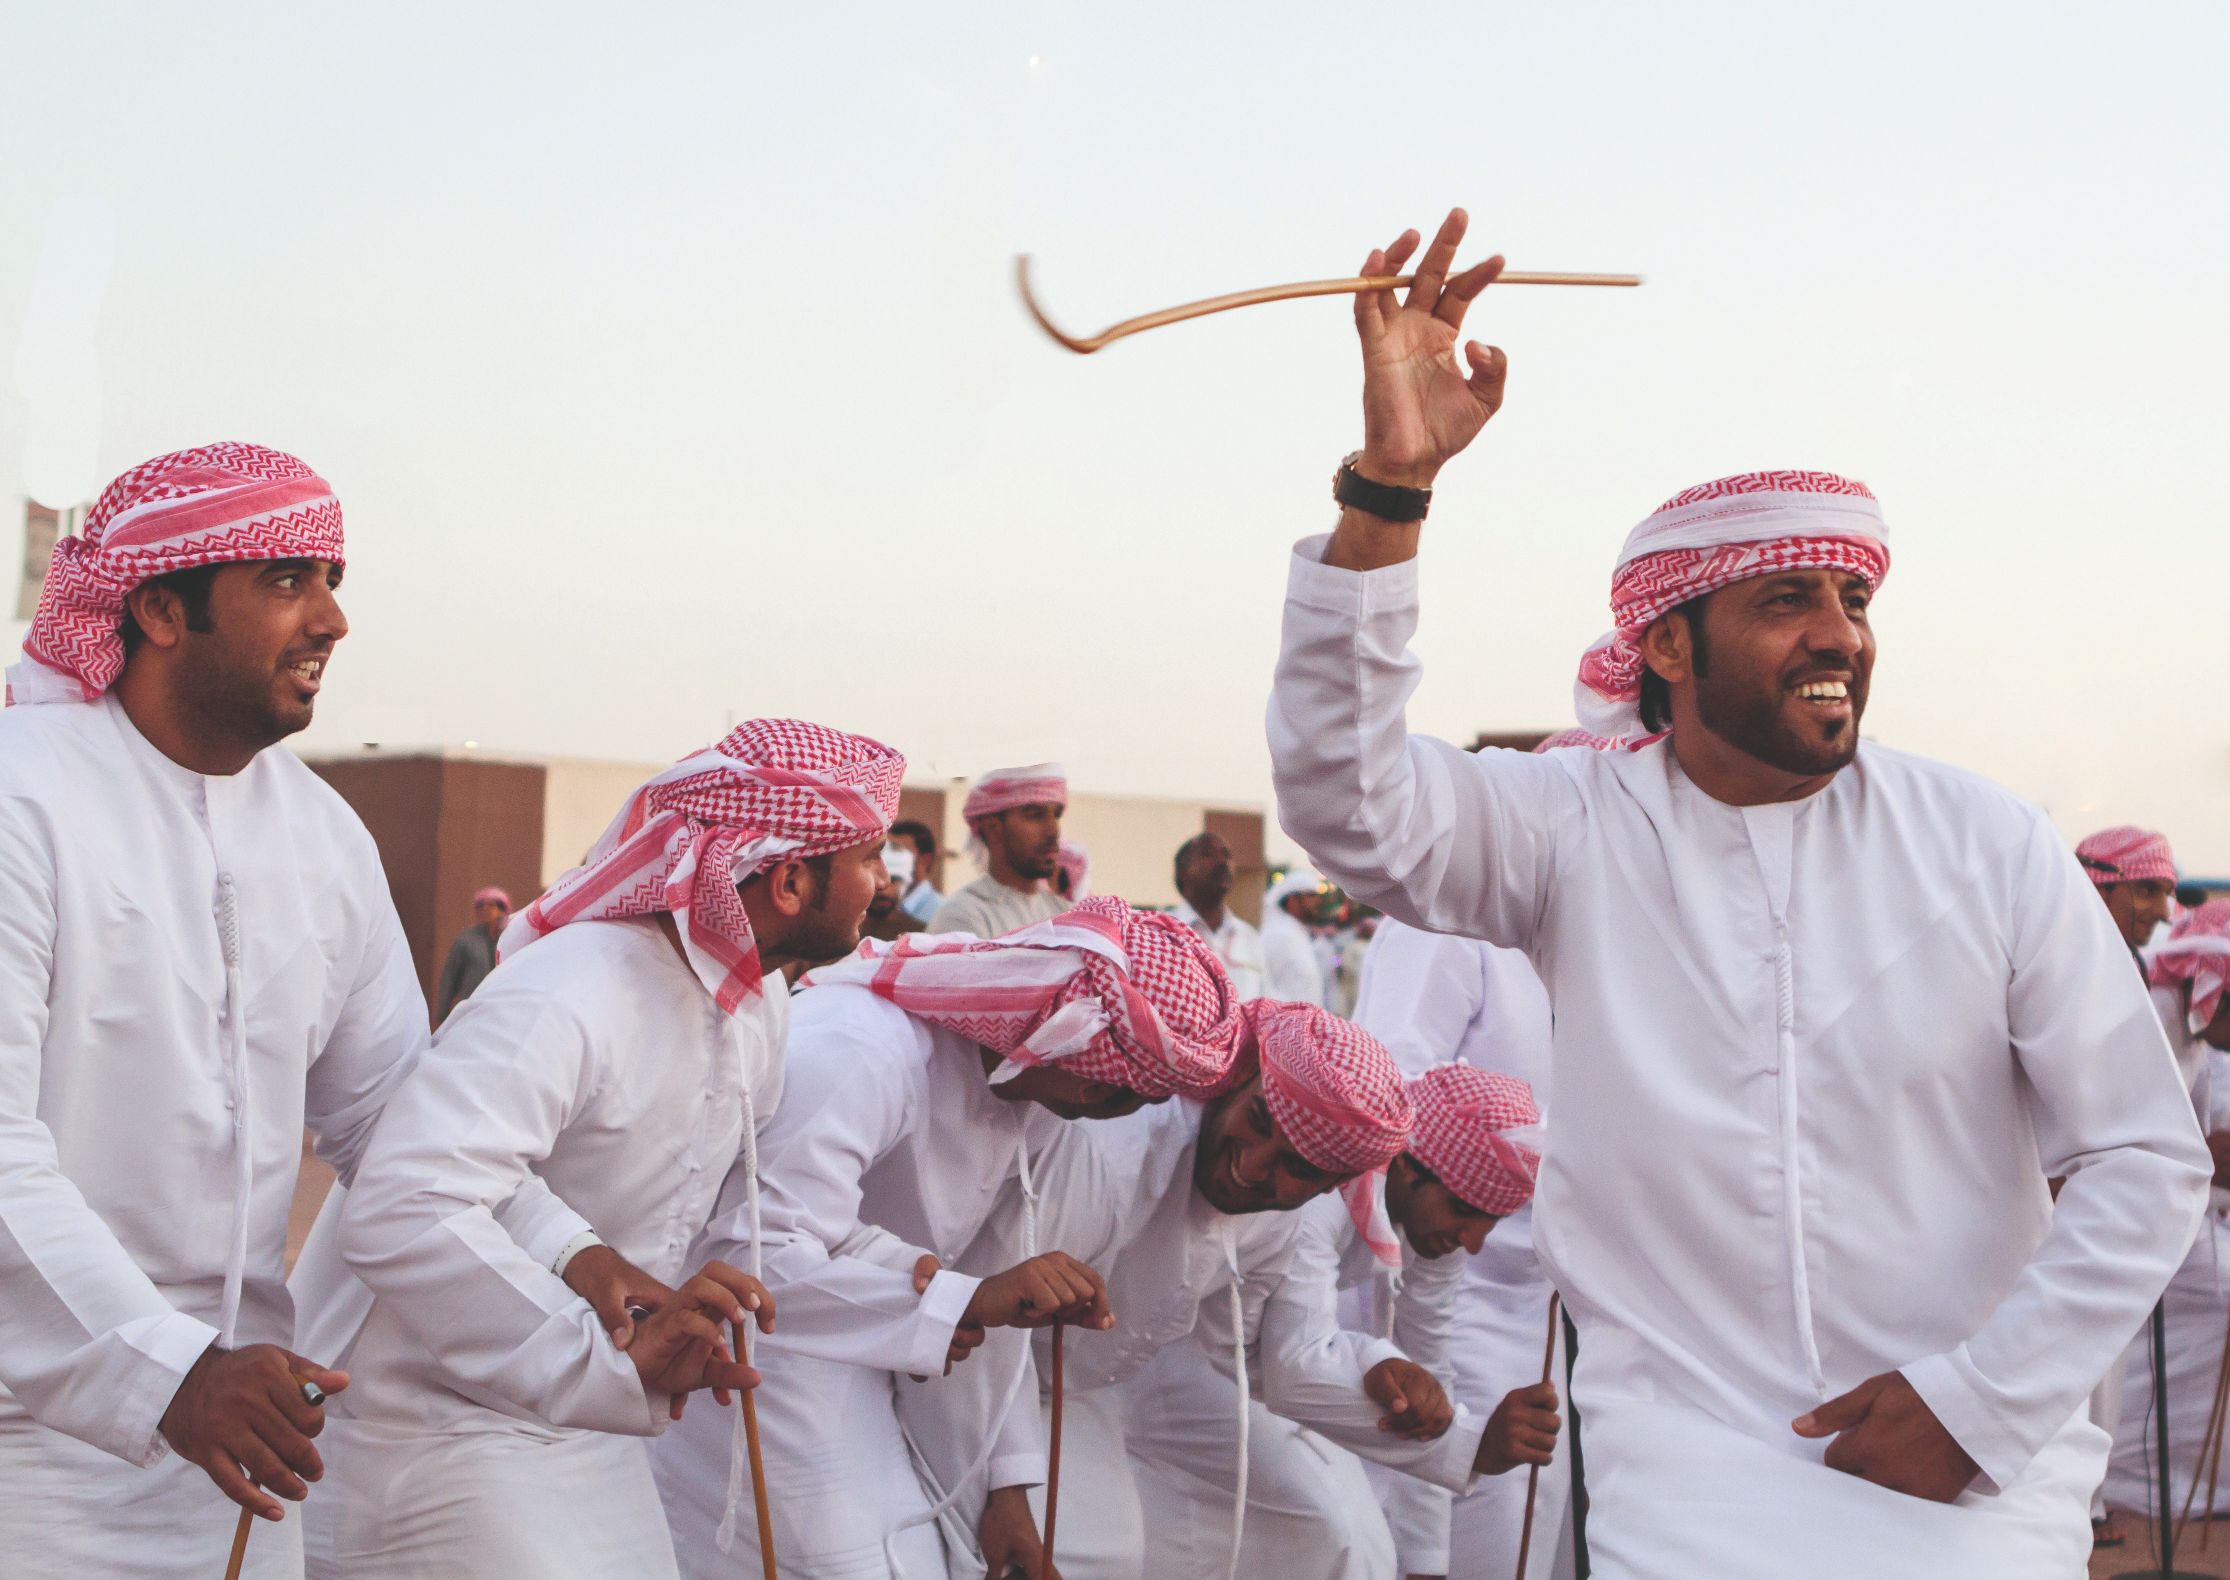 Lokaler arabischer Tanz während der Feierlichkeiten zum Nationalfeiertag (Gründung der VAE)